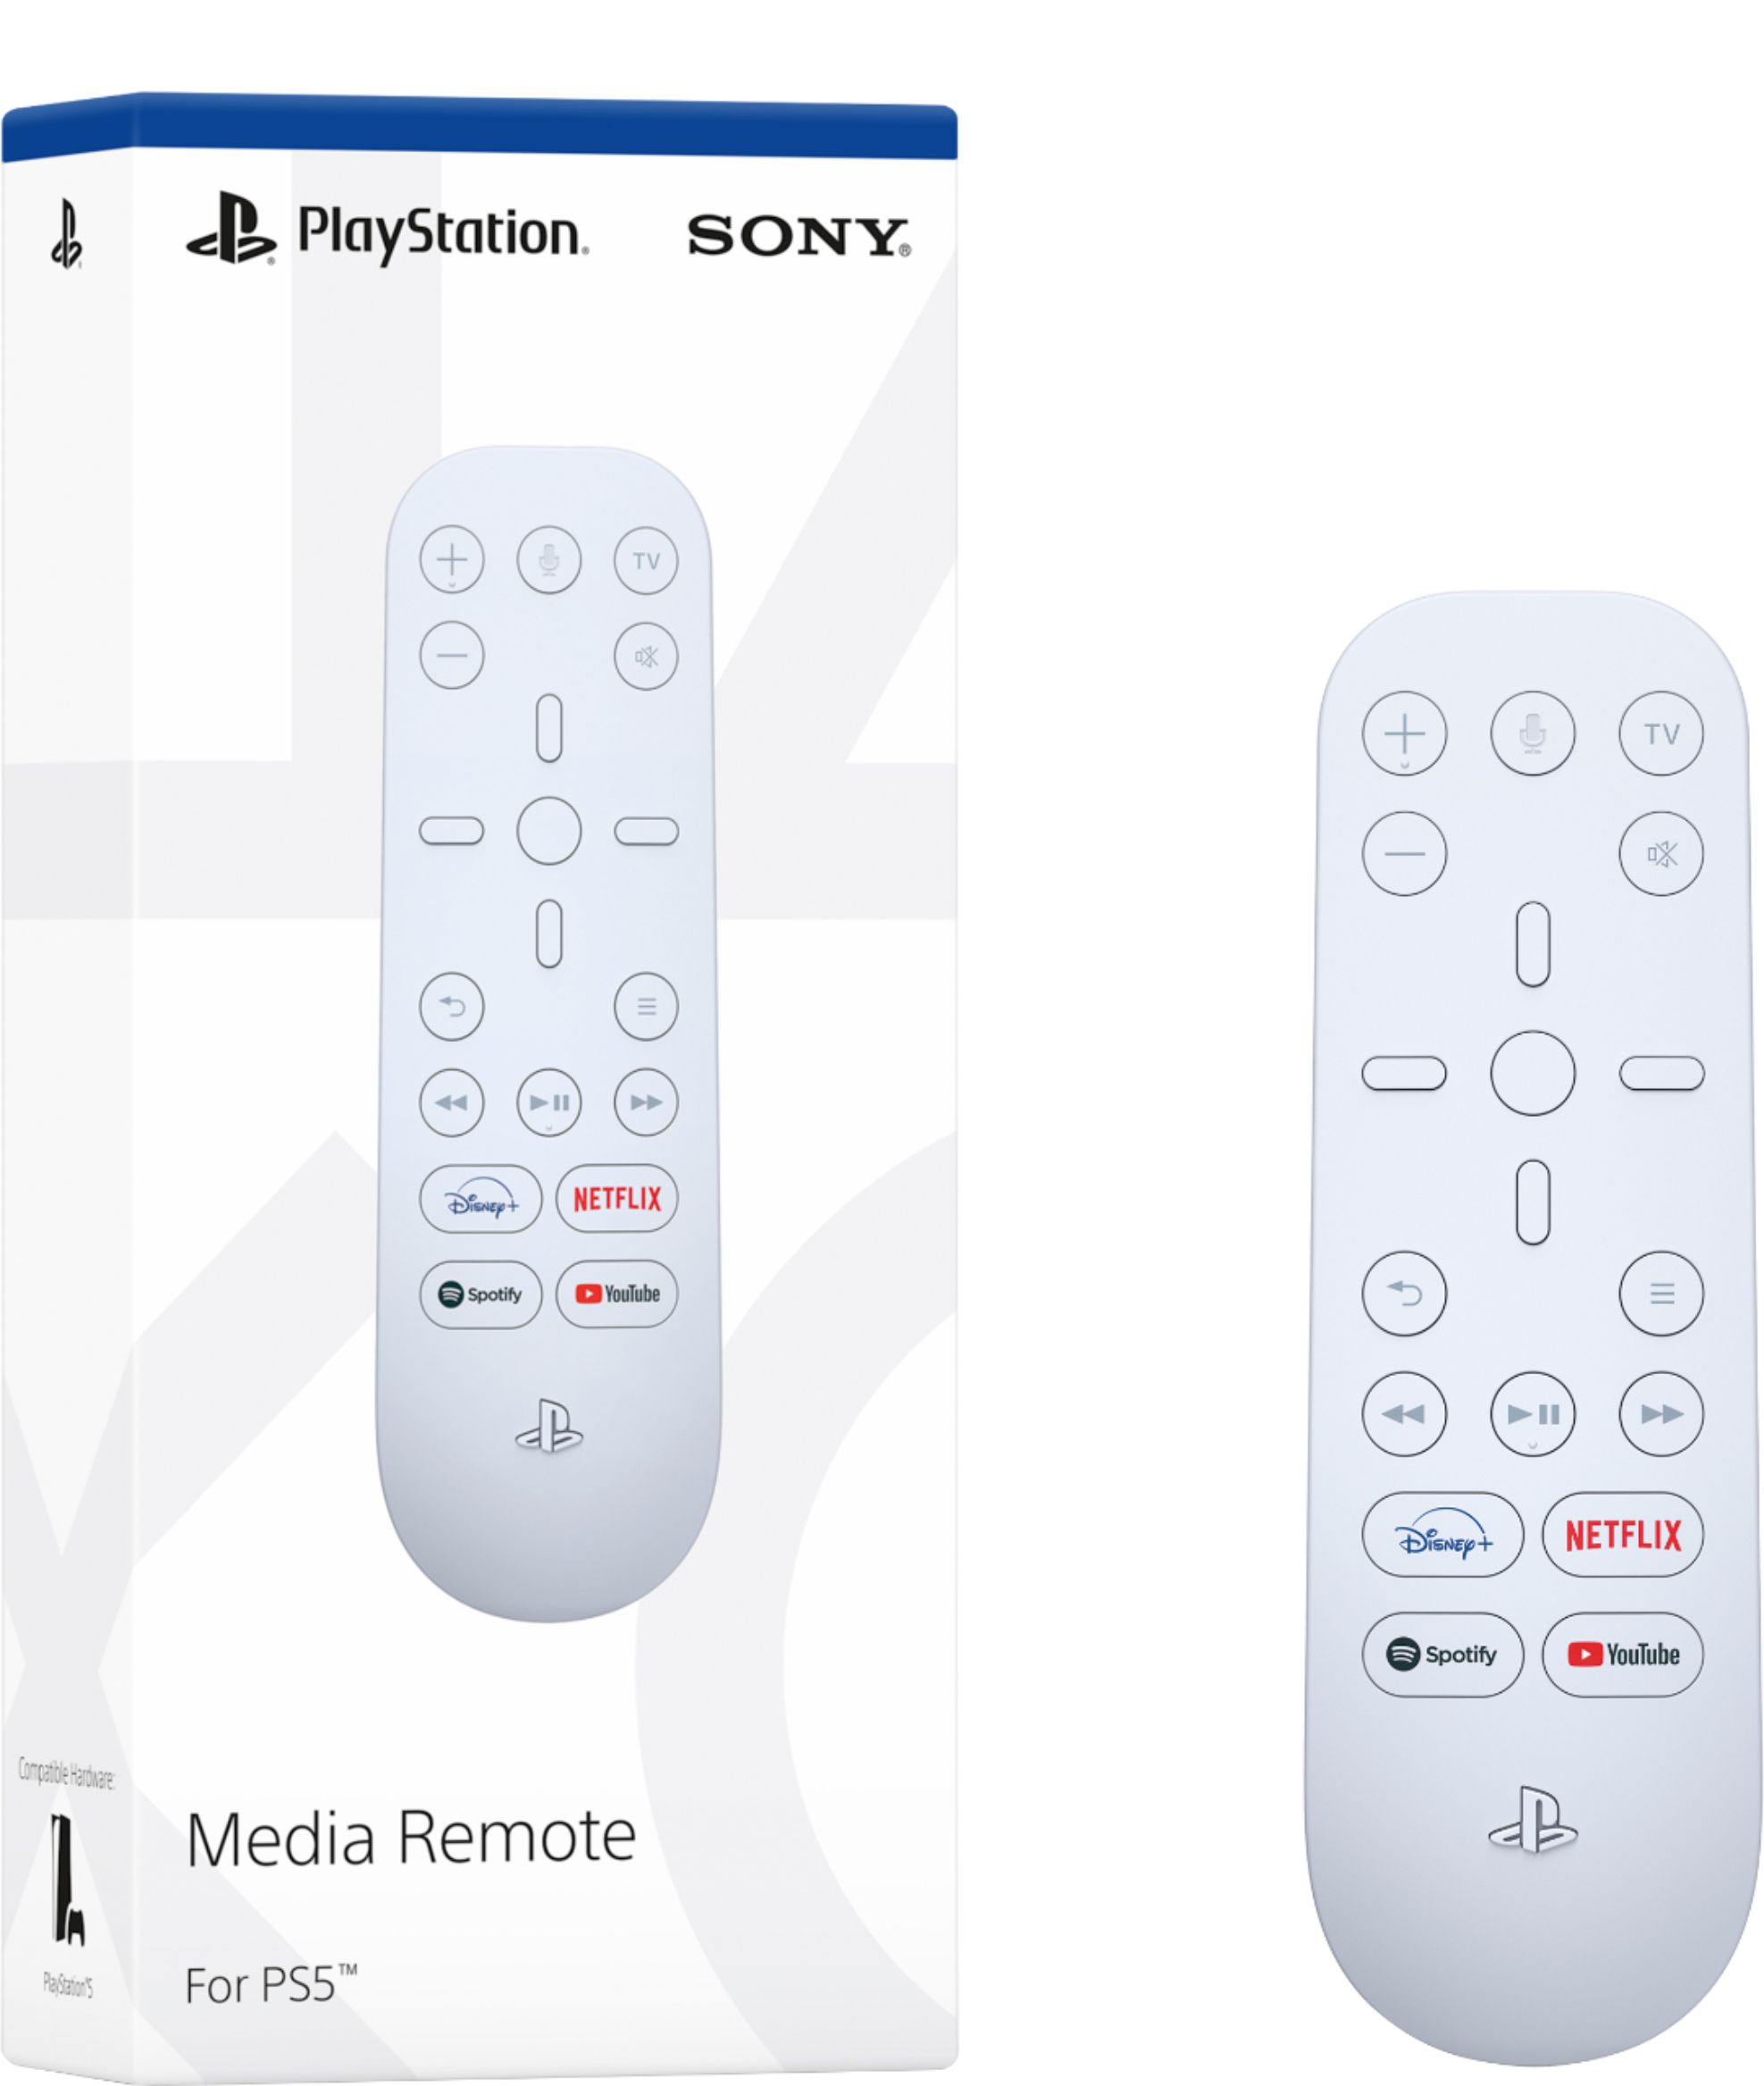 playstation media remote